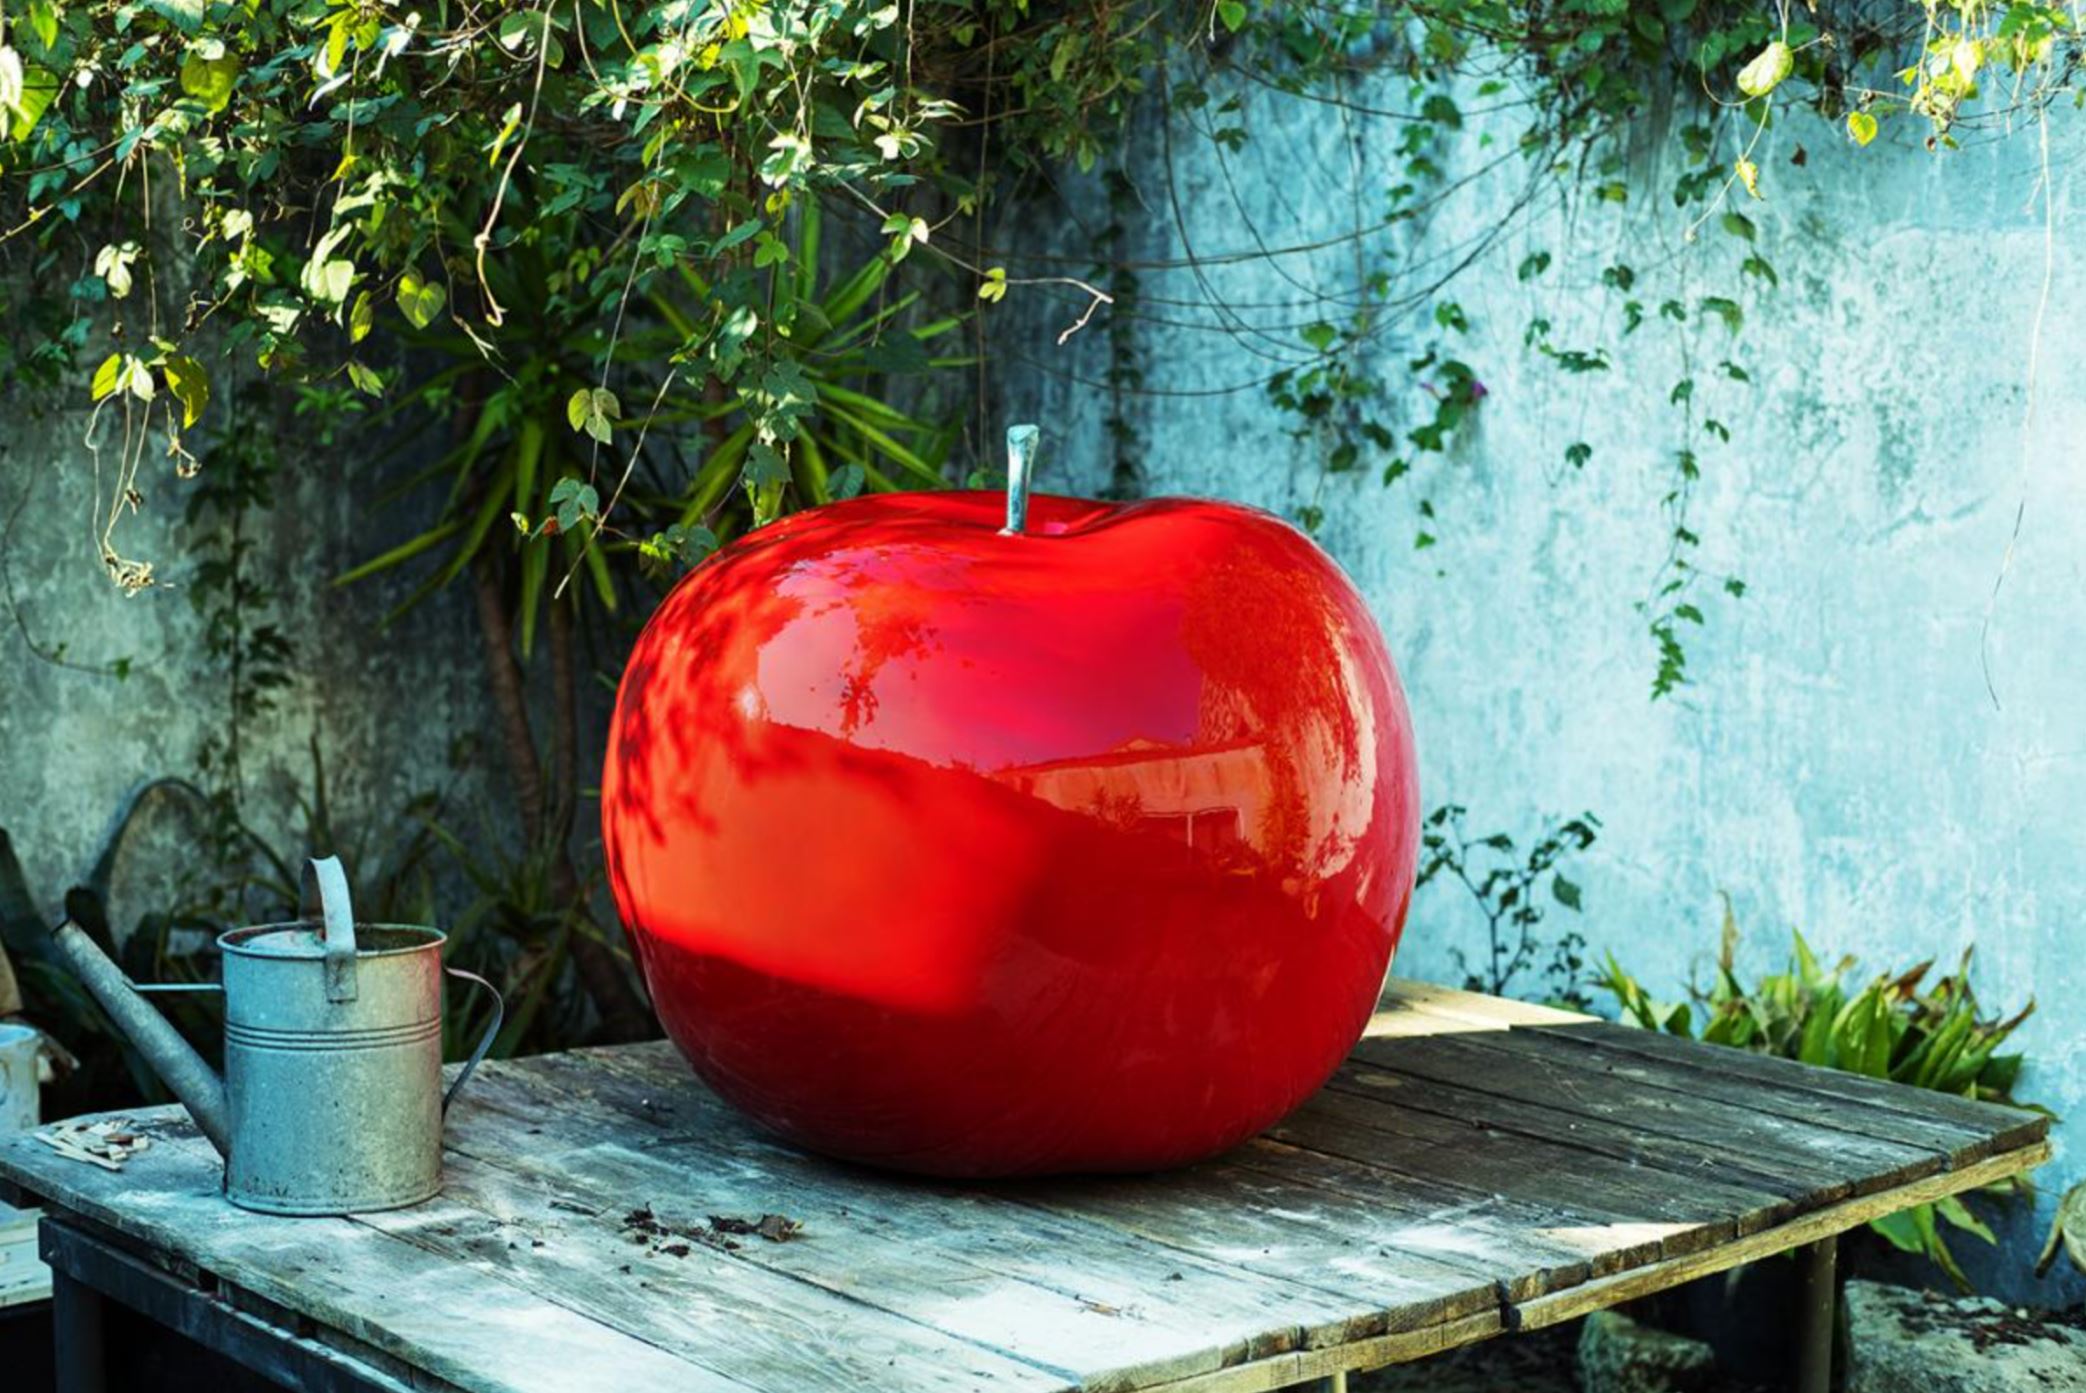 Bull & Stein Designobjekt "Apple" in red